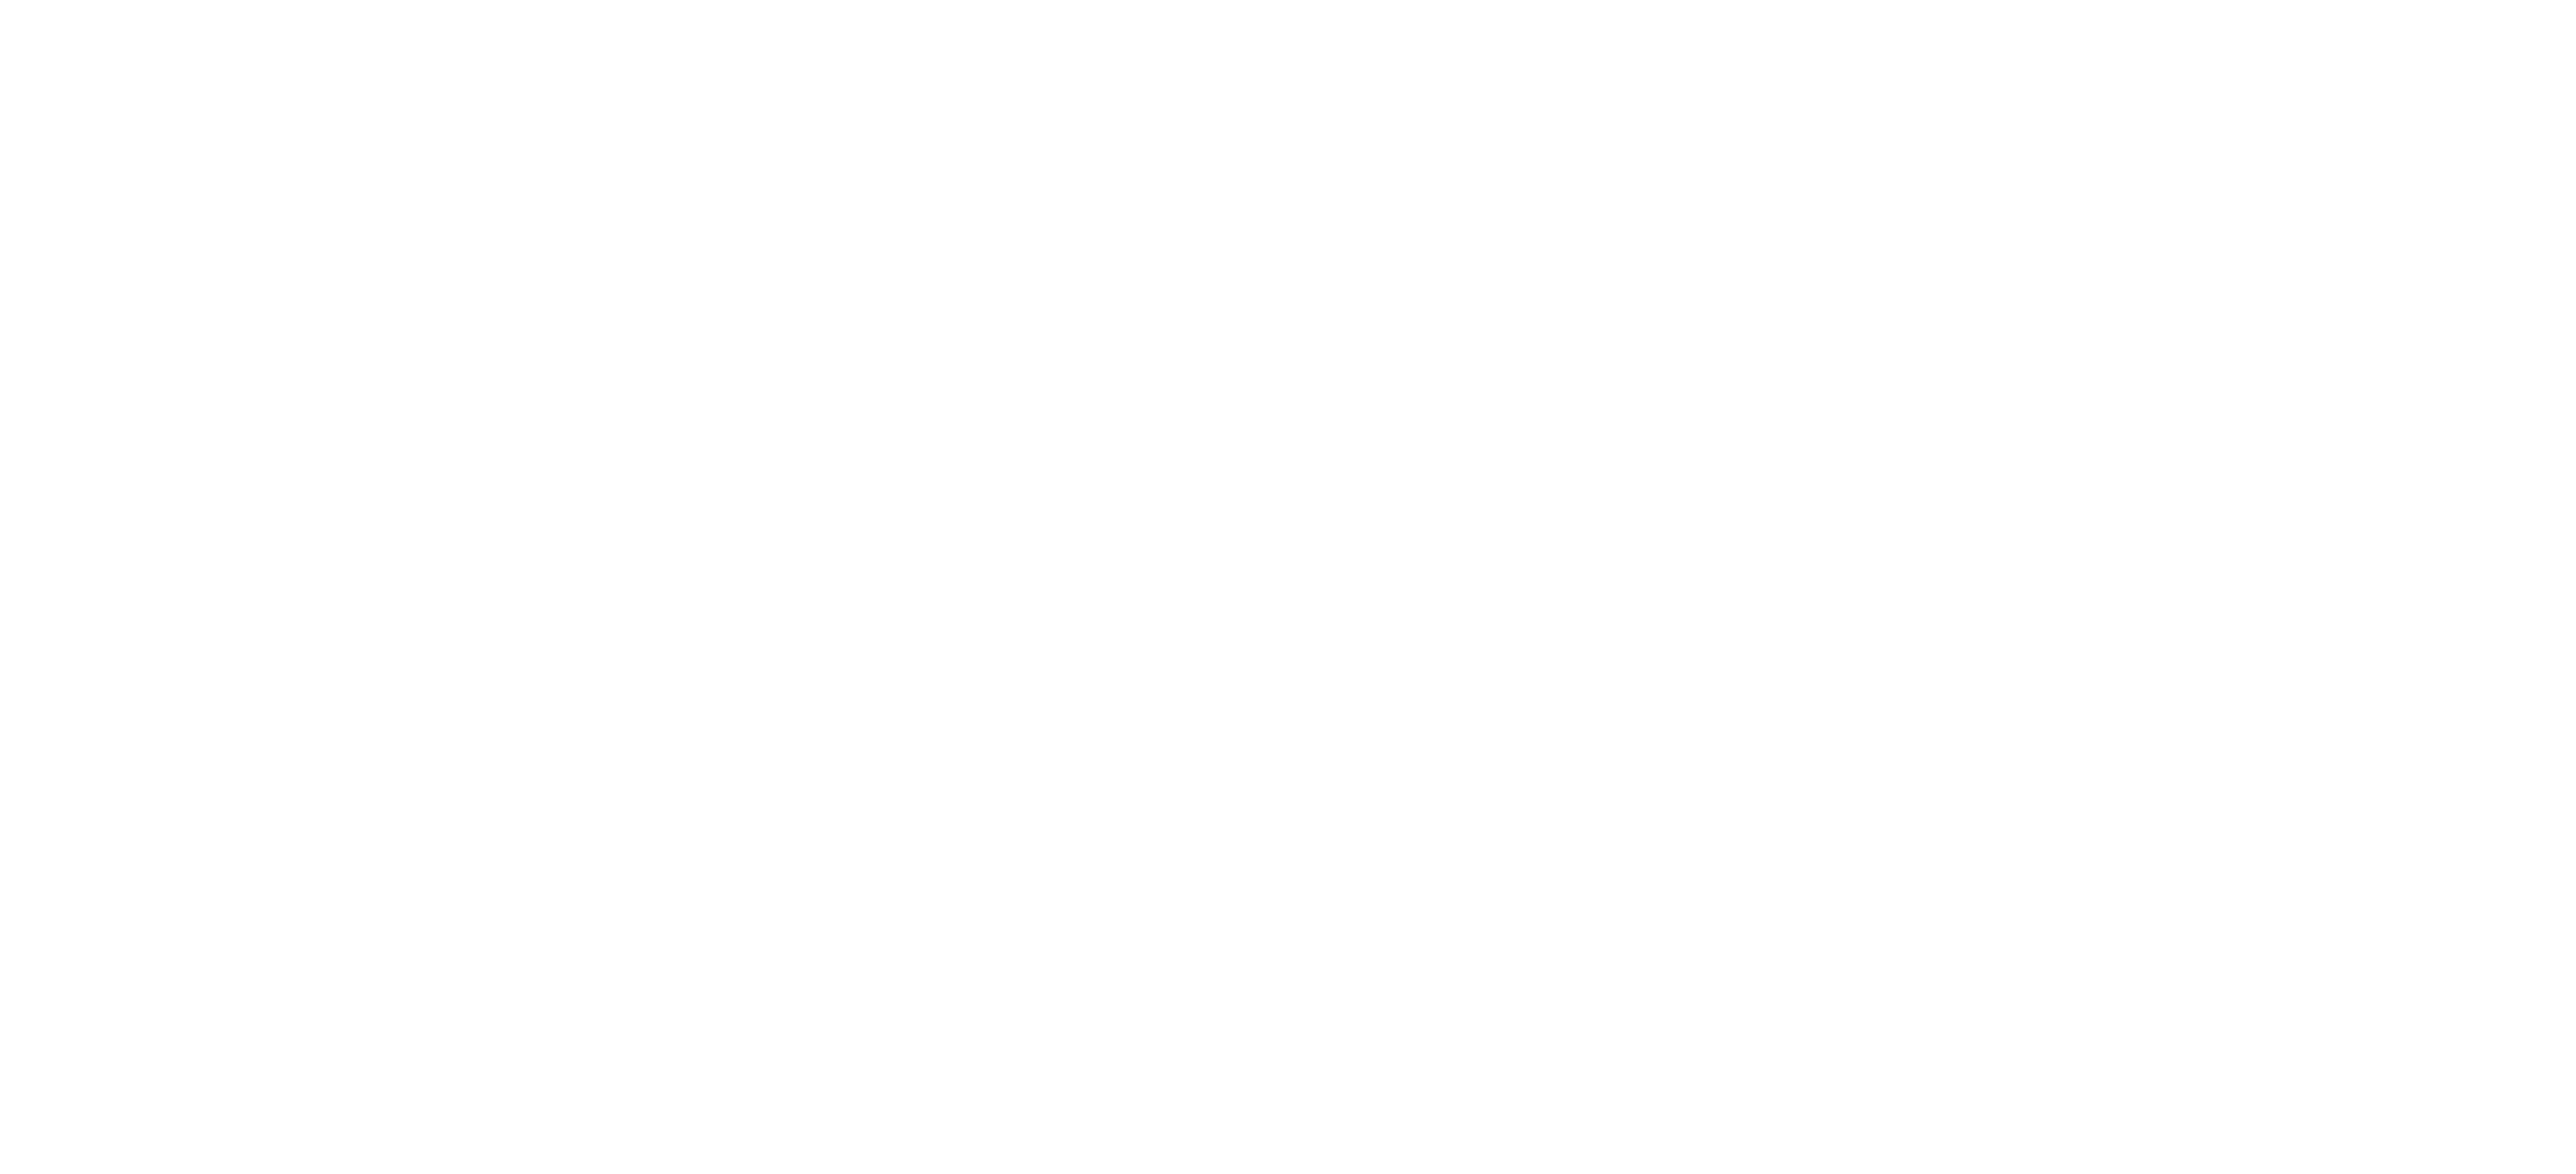 hansonwade_logo_White